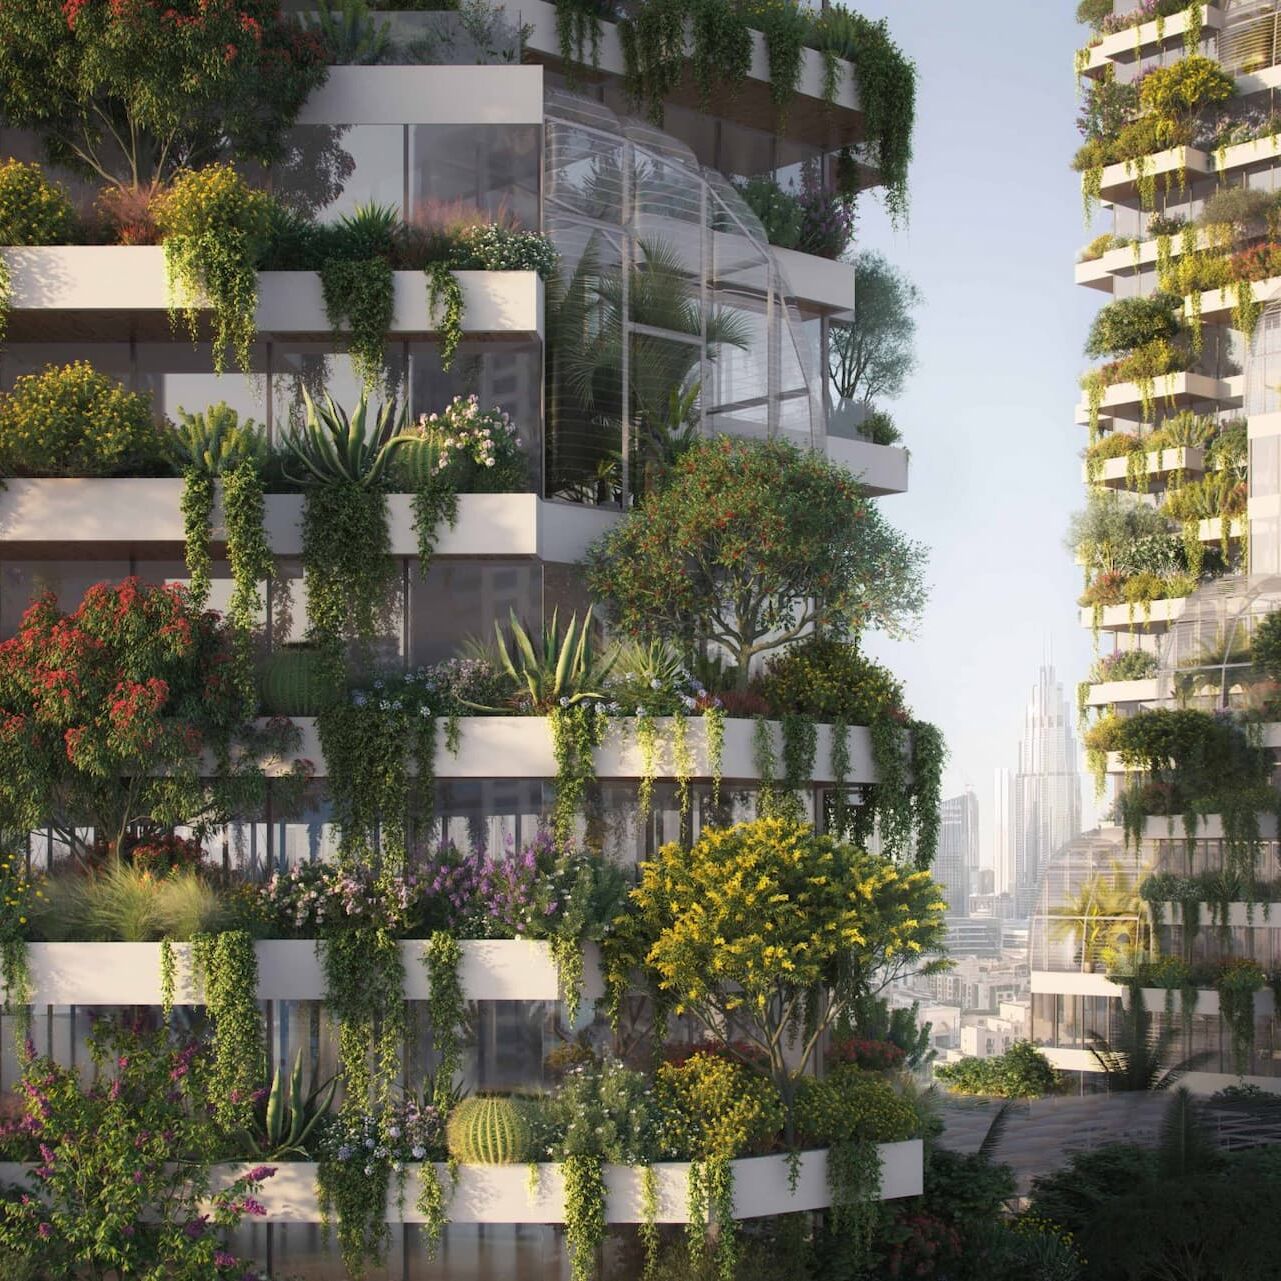 Függőleges erdő: a Dubai Függőleges Erdő részlete, amely több mint 27 XNUMX fának ad otthont, amelyek együttműködve csökkentik a szennyezést és elősegítik az ideális mikroklímát (Fotó: Stefano Boeri Architetti)